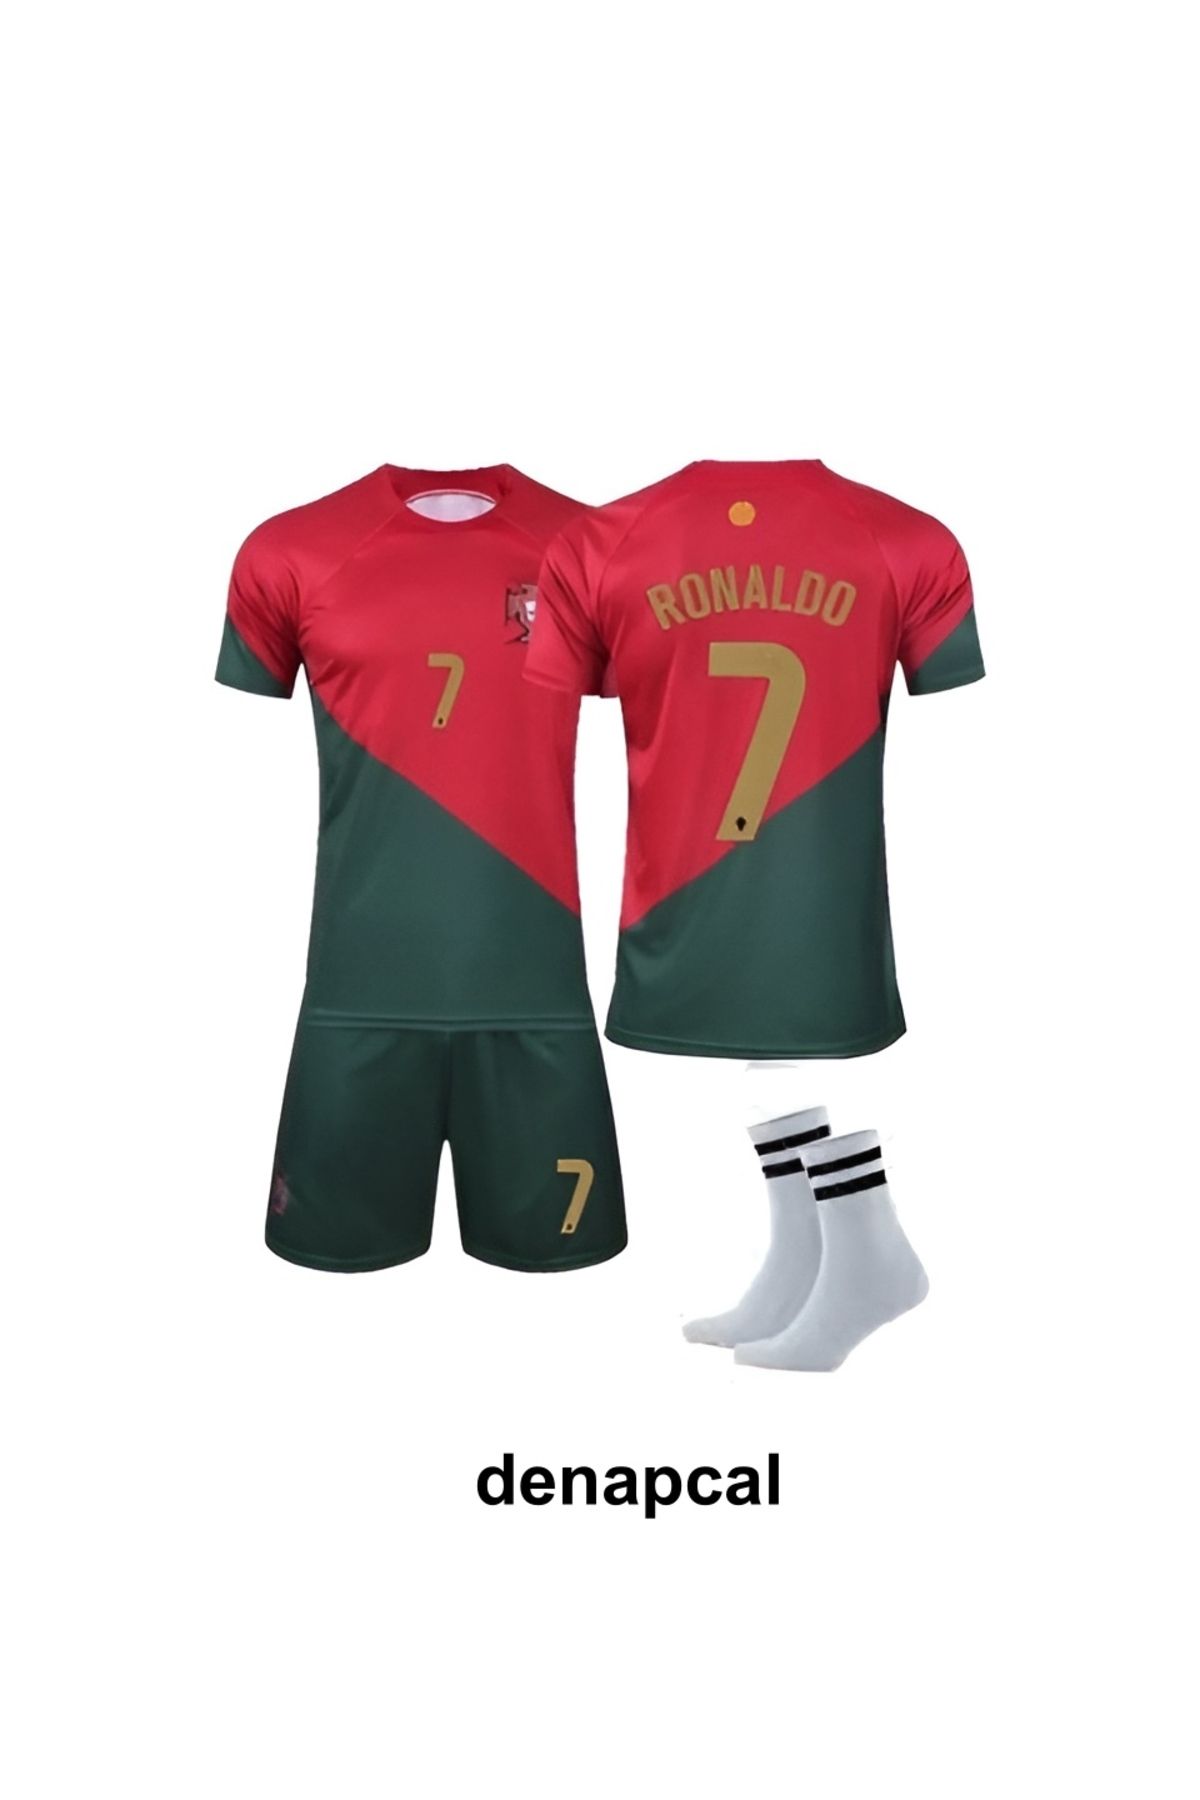 DENAPCAL Ronaldo Kırmızı Portekiz Dünya Kupası 7 Yeni Sezon 3'lü Çoçuk Futbol Forma Seti